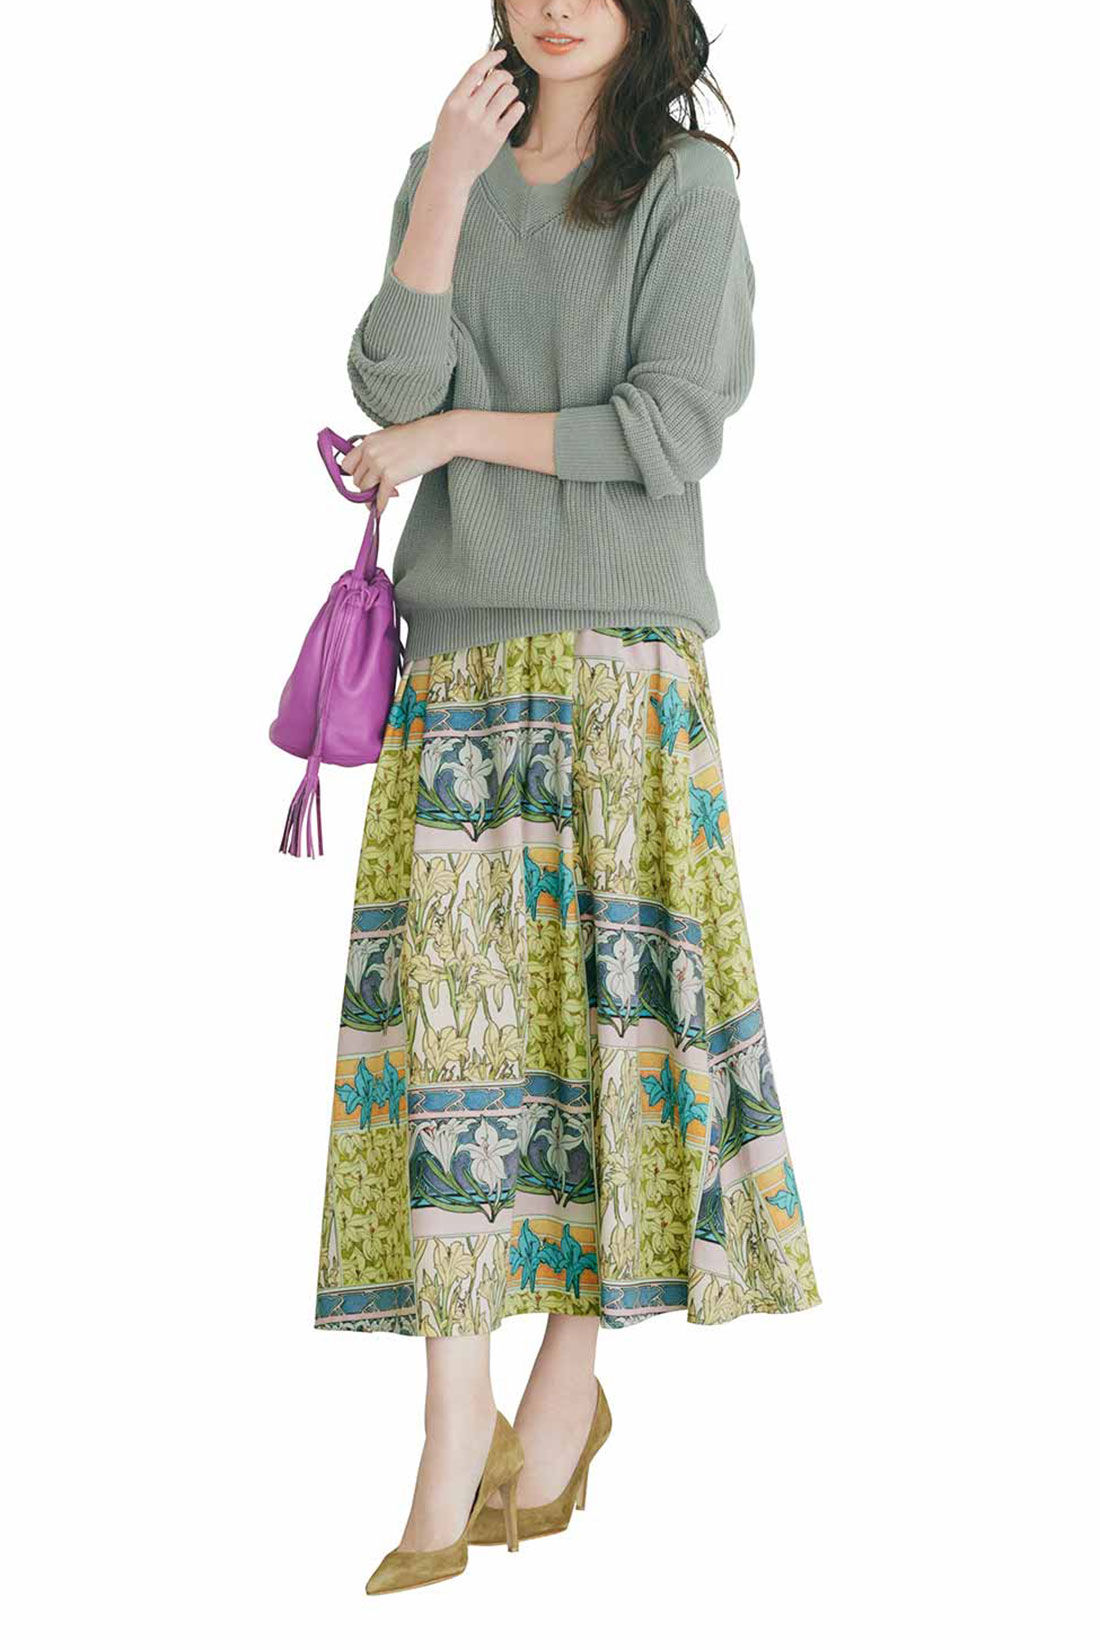 IEDIT[イディット]　優美なミュシャの図案をまとう クラッシックなプリントスカート〈ベージュ〉|※着用イメージです。お届けするカラーとは異なります。